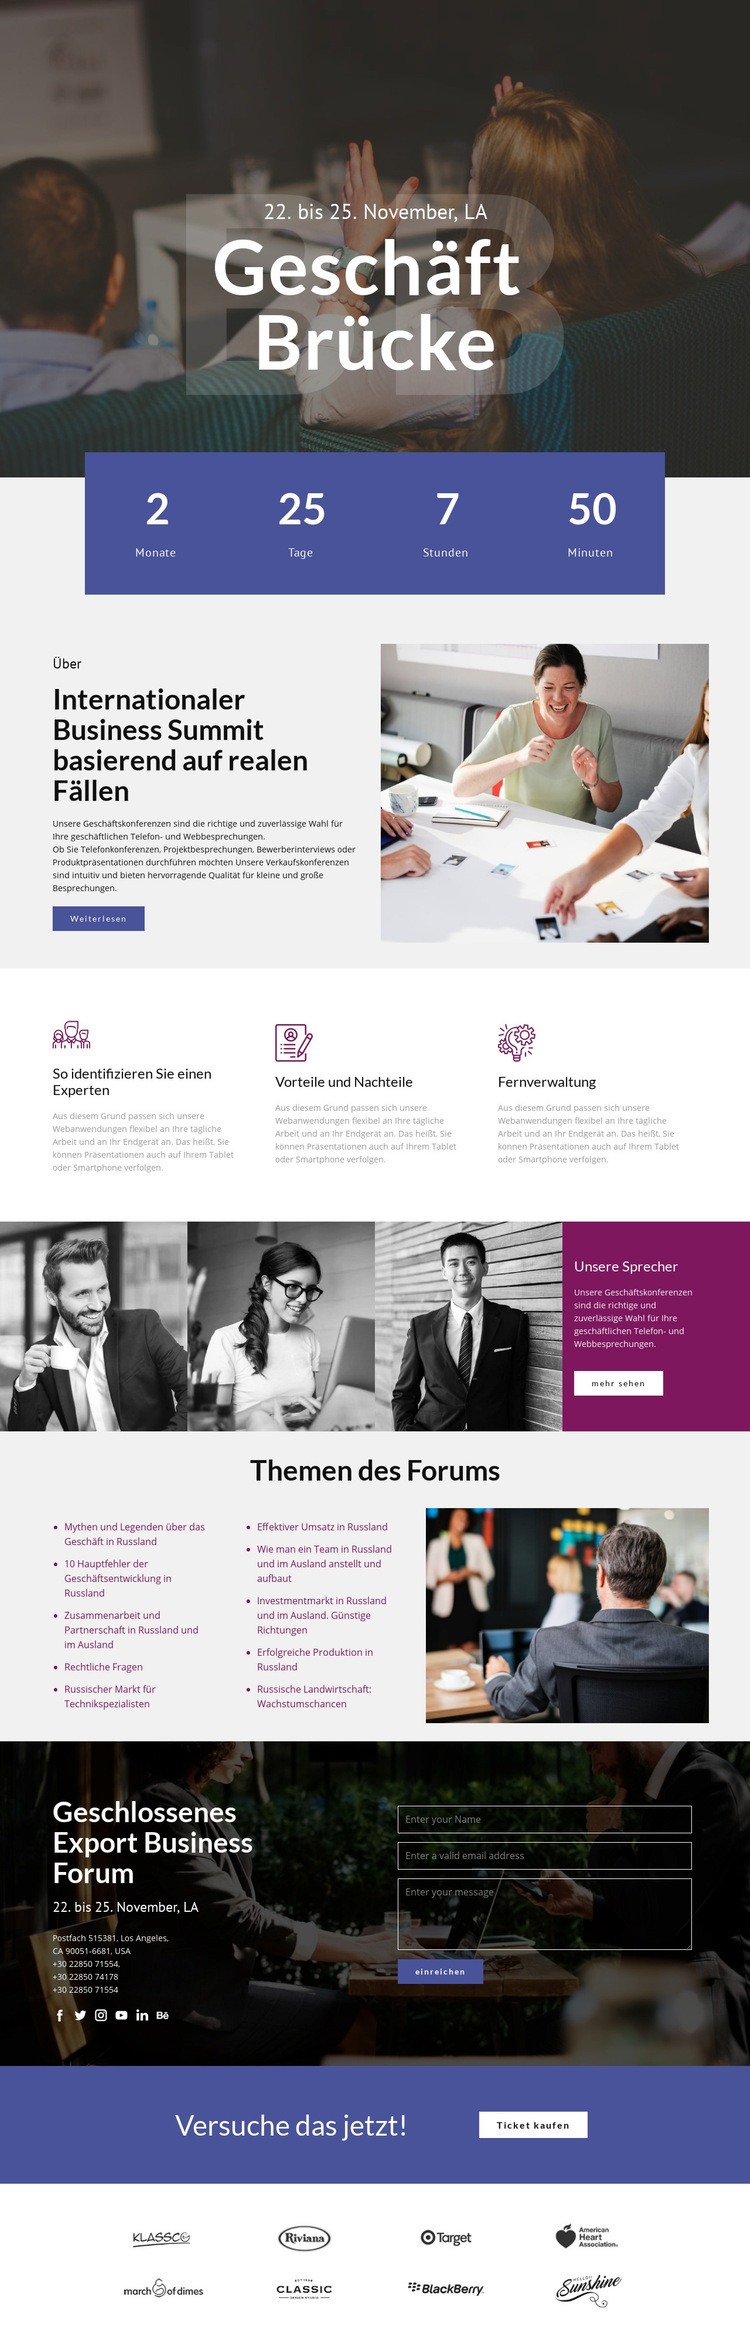 Geschäftsbrücke Website-Modell